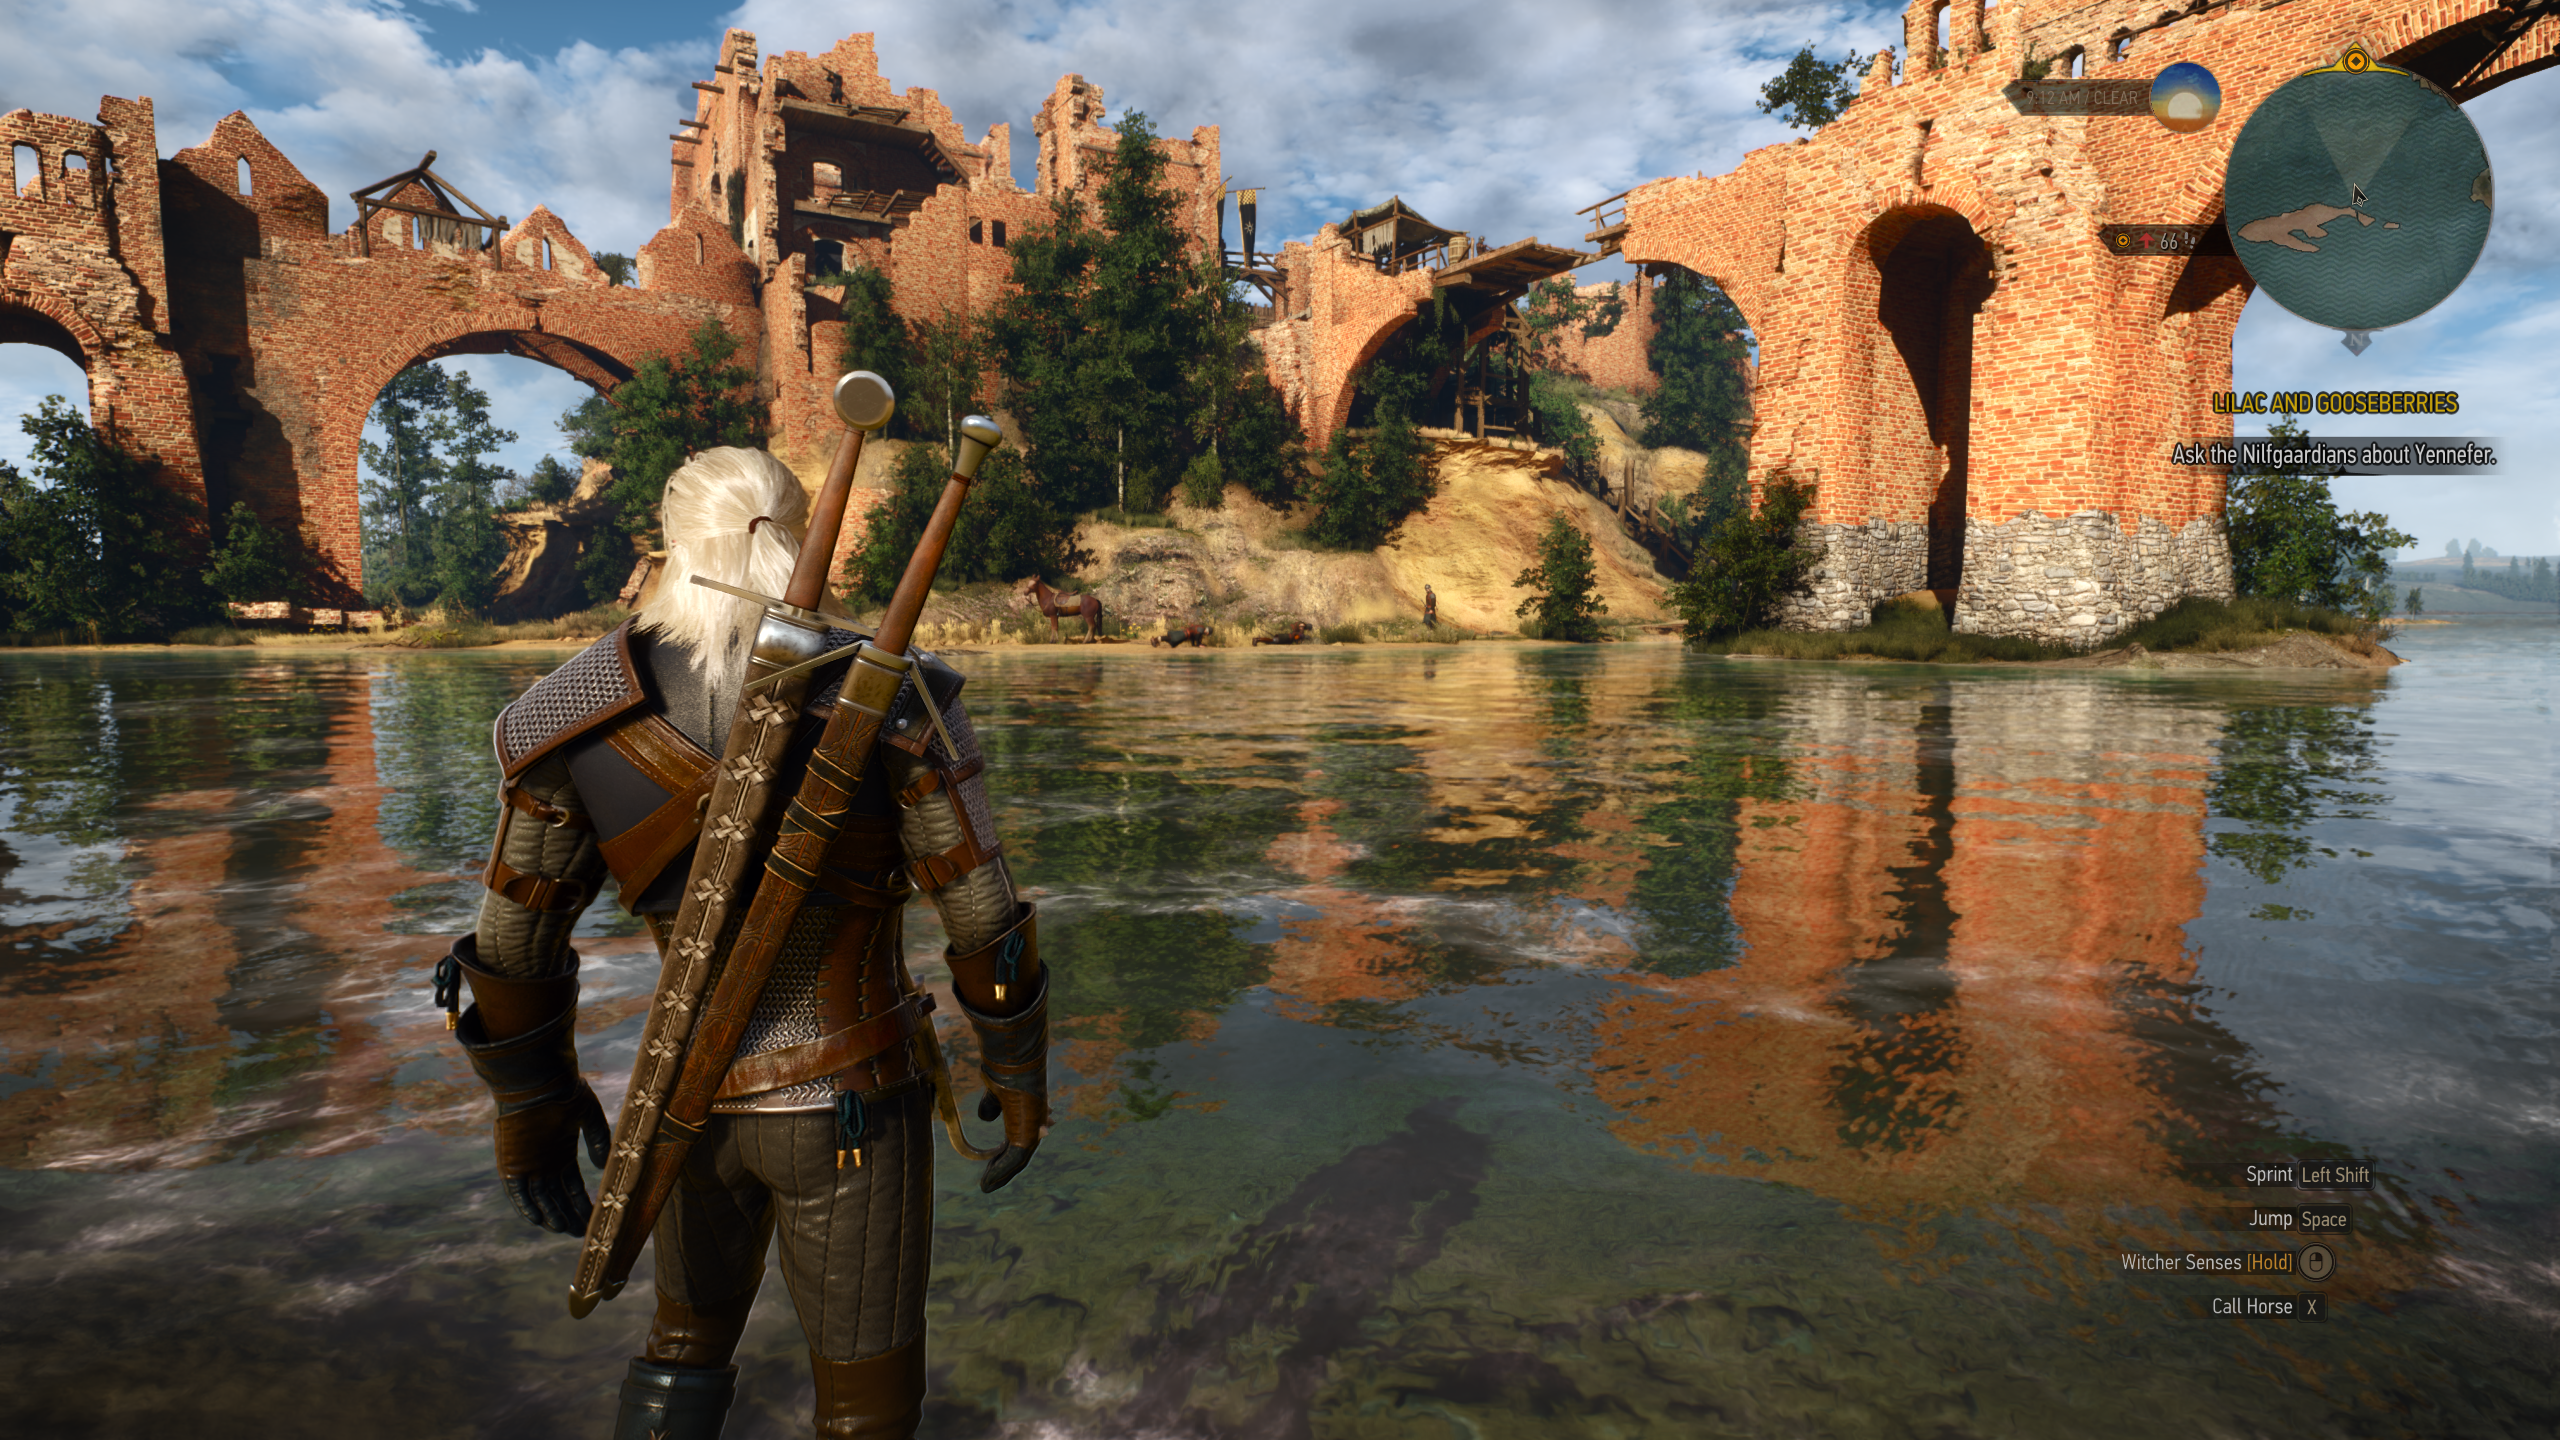 Uma guarnição à beira do lago em The Witcher 3: Wild Hunt, rodando no modo RT Ultra após a atualização de última geração.